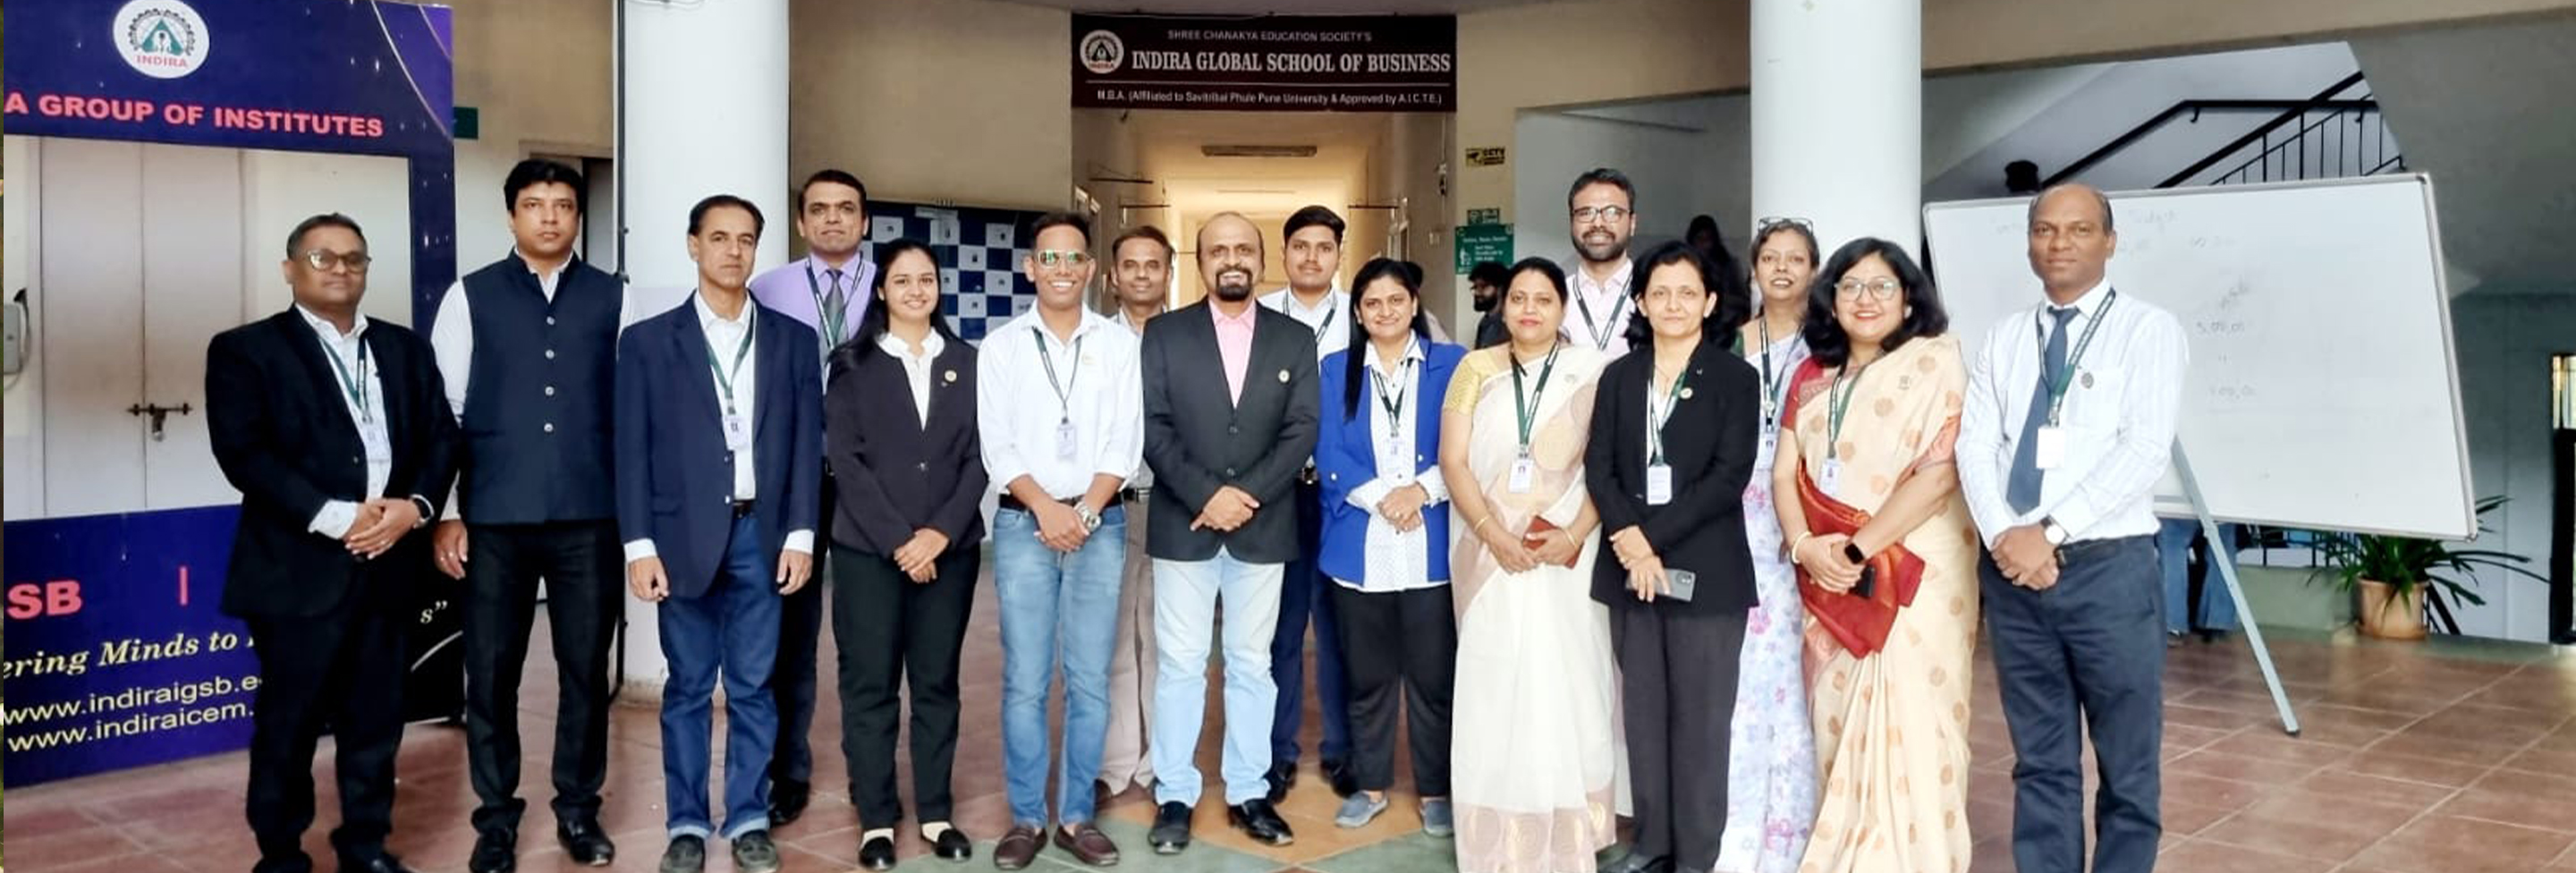 Recruiters at IGBS MBA - Doordarshan